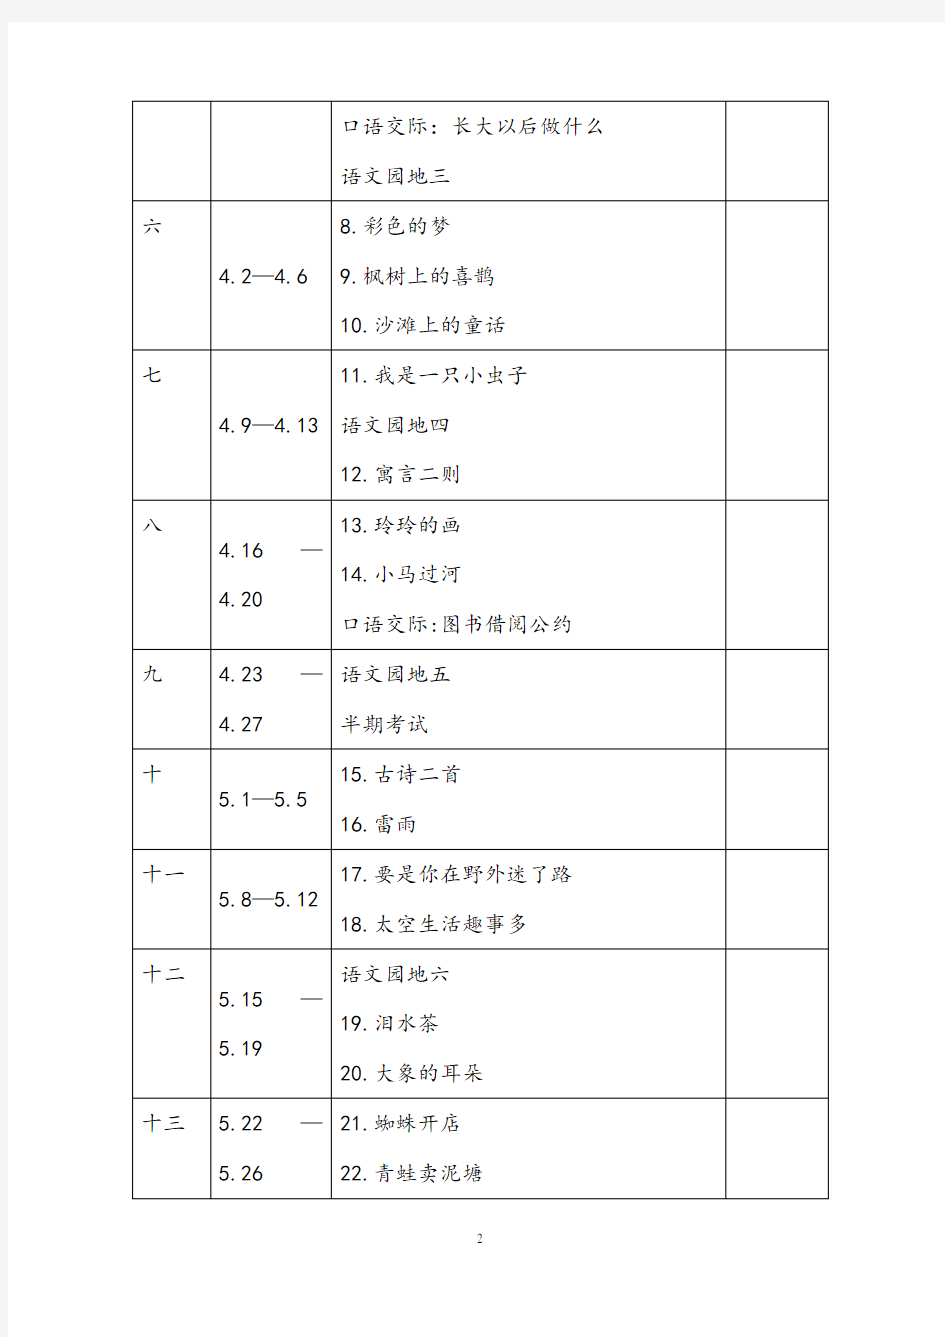 最新人教版二年级语文下册教学进度安排表(按日期)